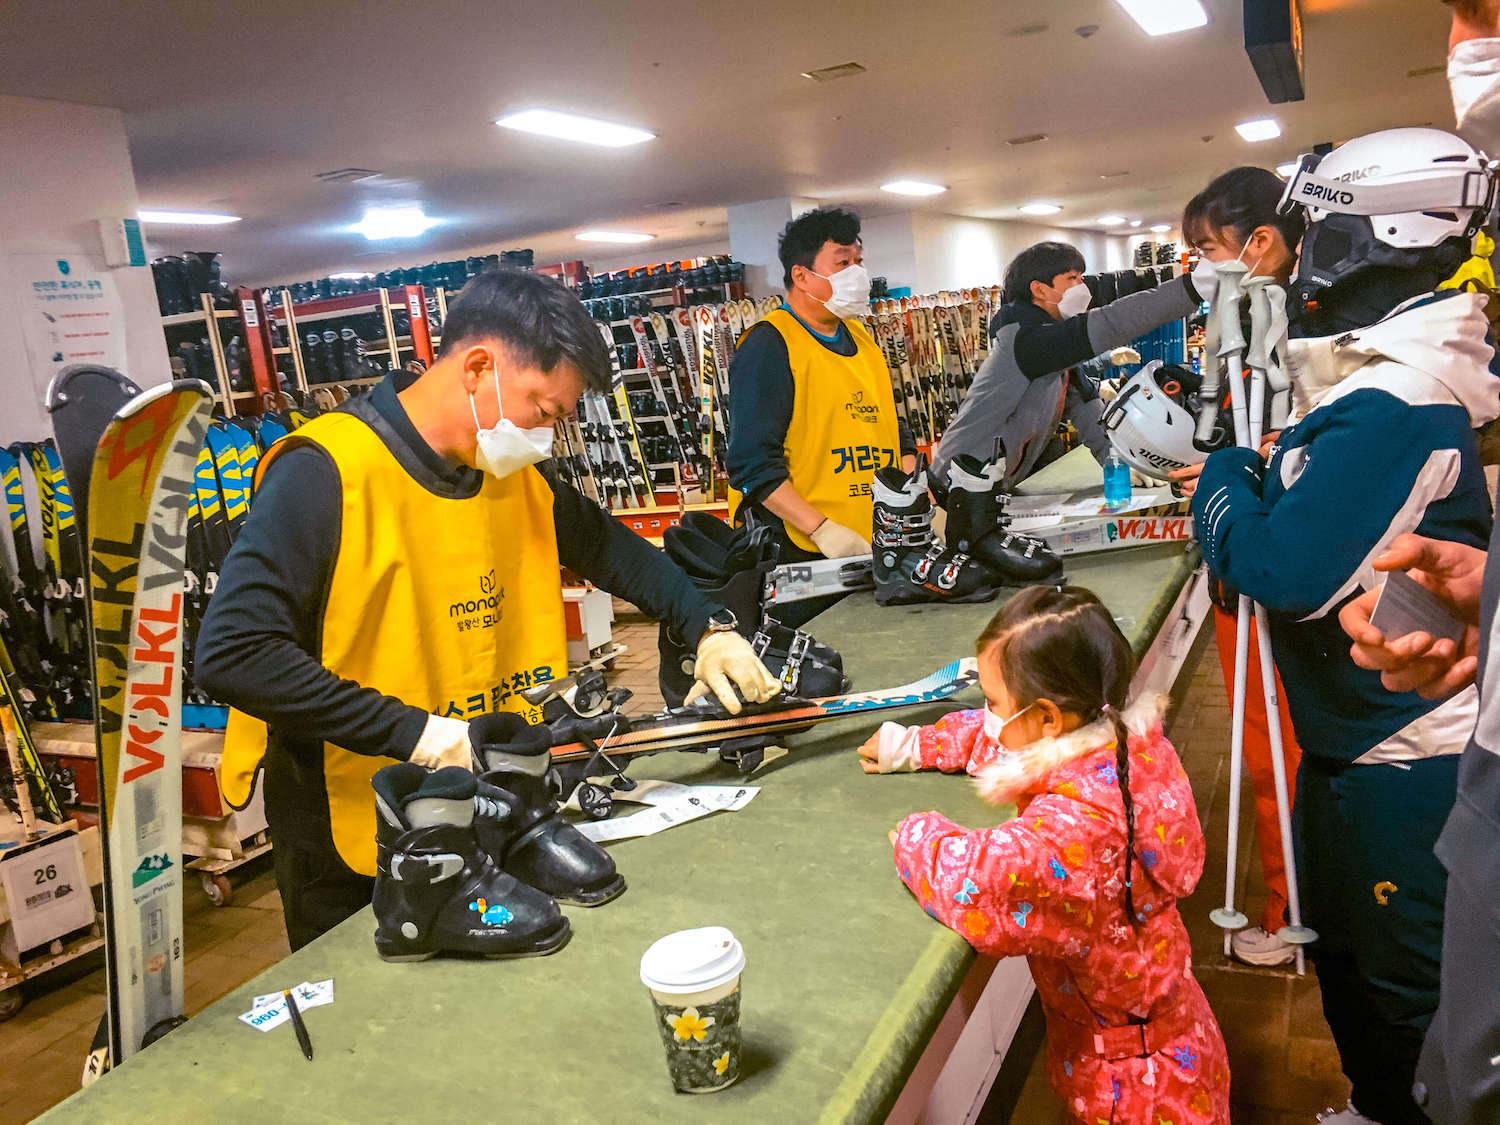 yongpyong ski resort in korea | renting ski equipment